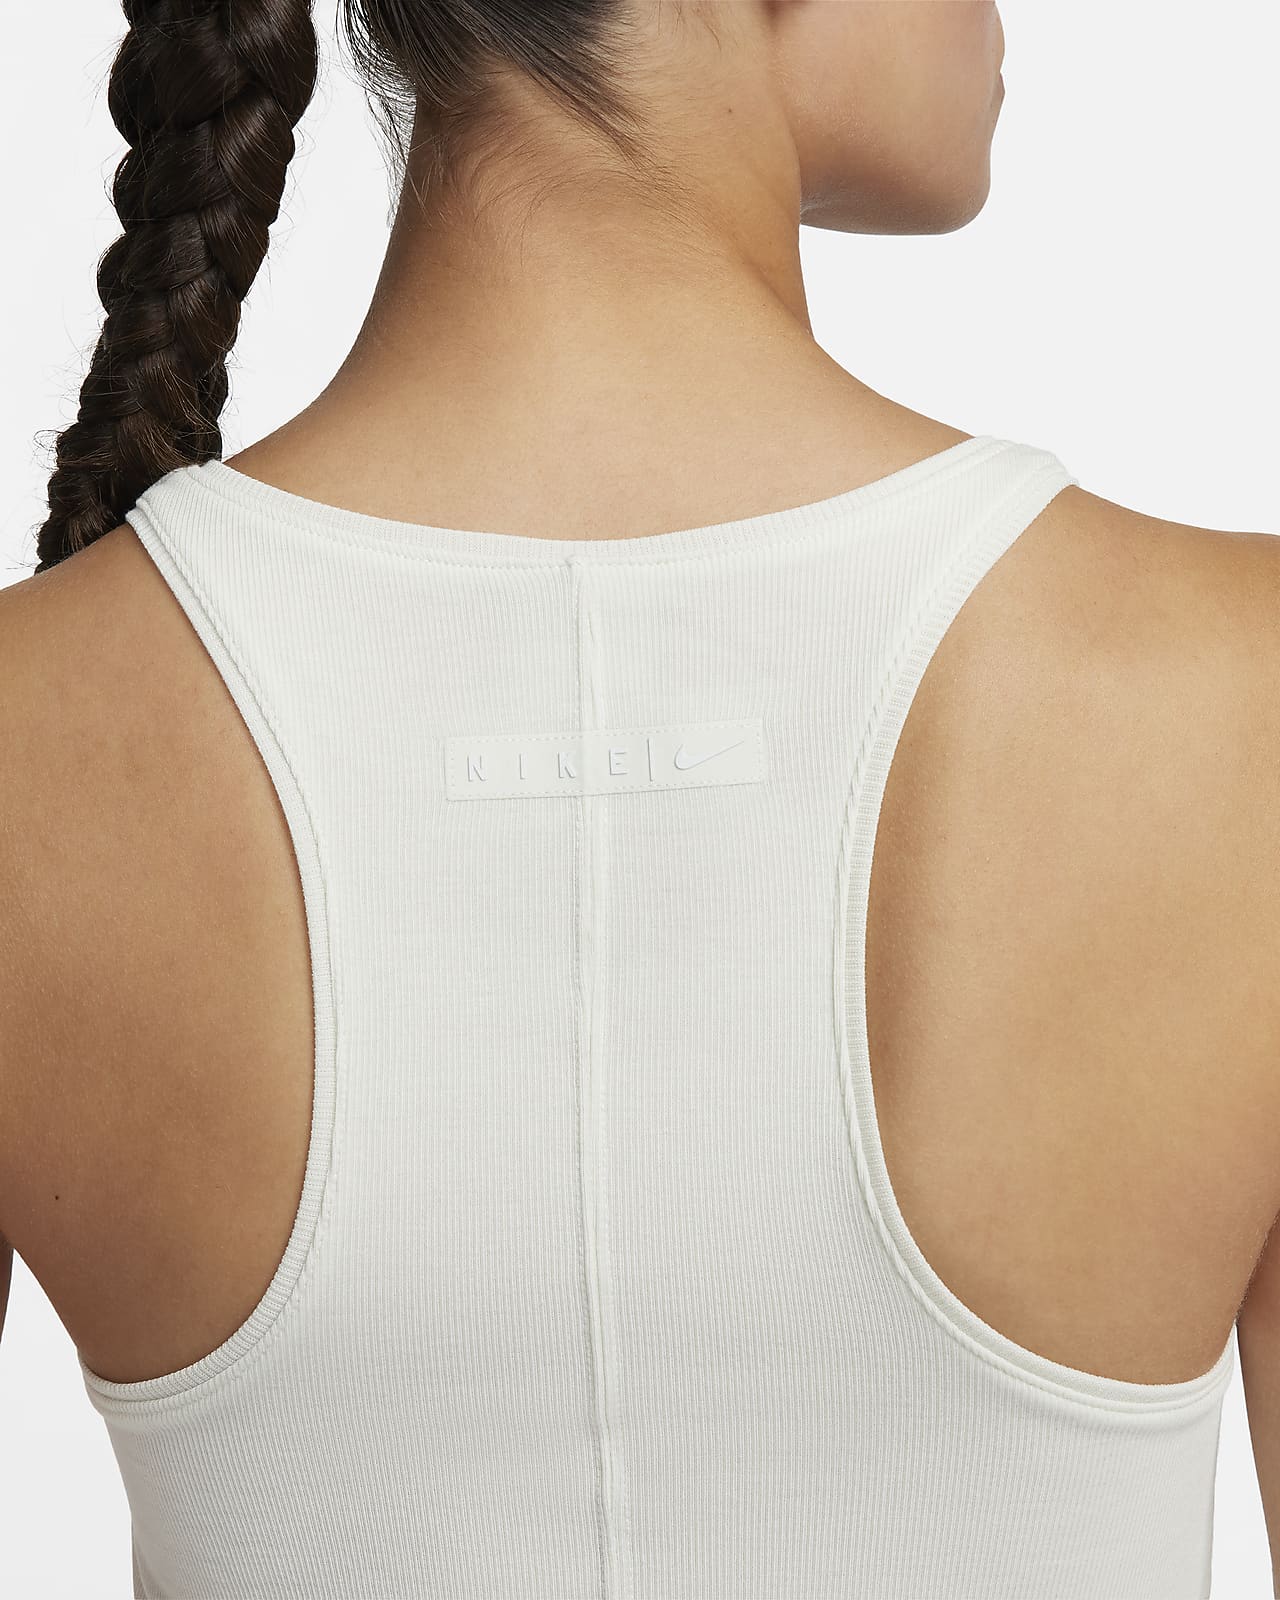 Nike Camiseta sin mangas de yoga para mujer